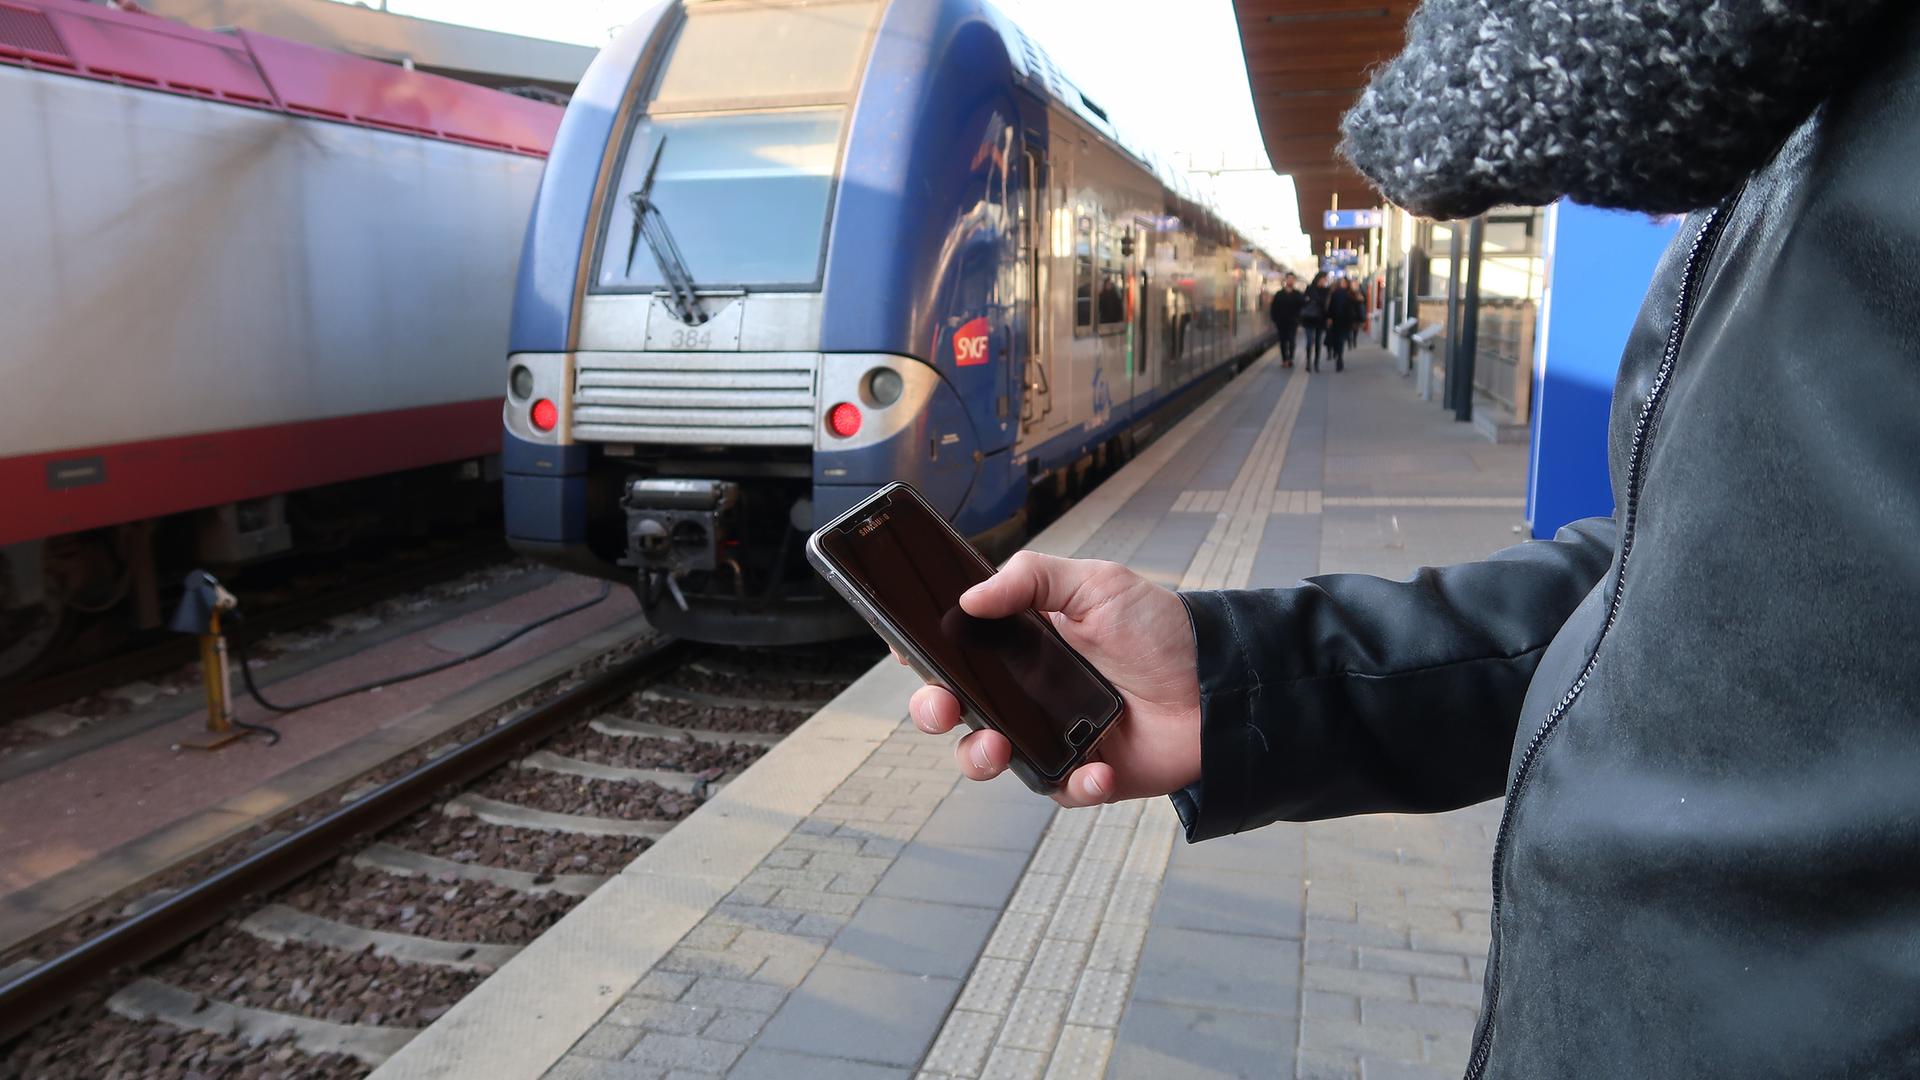 Les frontaliers sont nombreux à utiliser les réseaux sociaux pour s'informer du trafic ferroviaire.